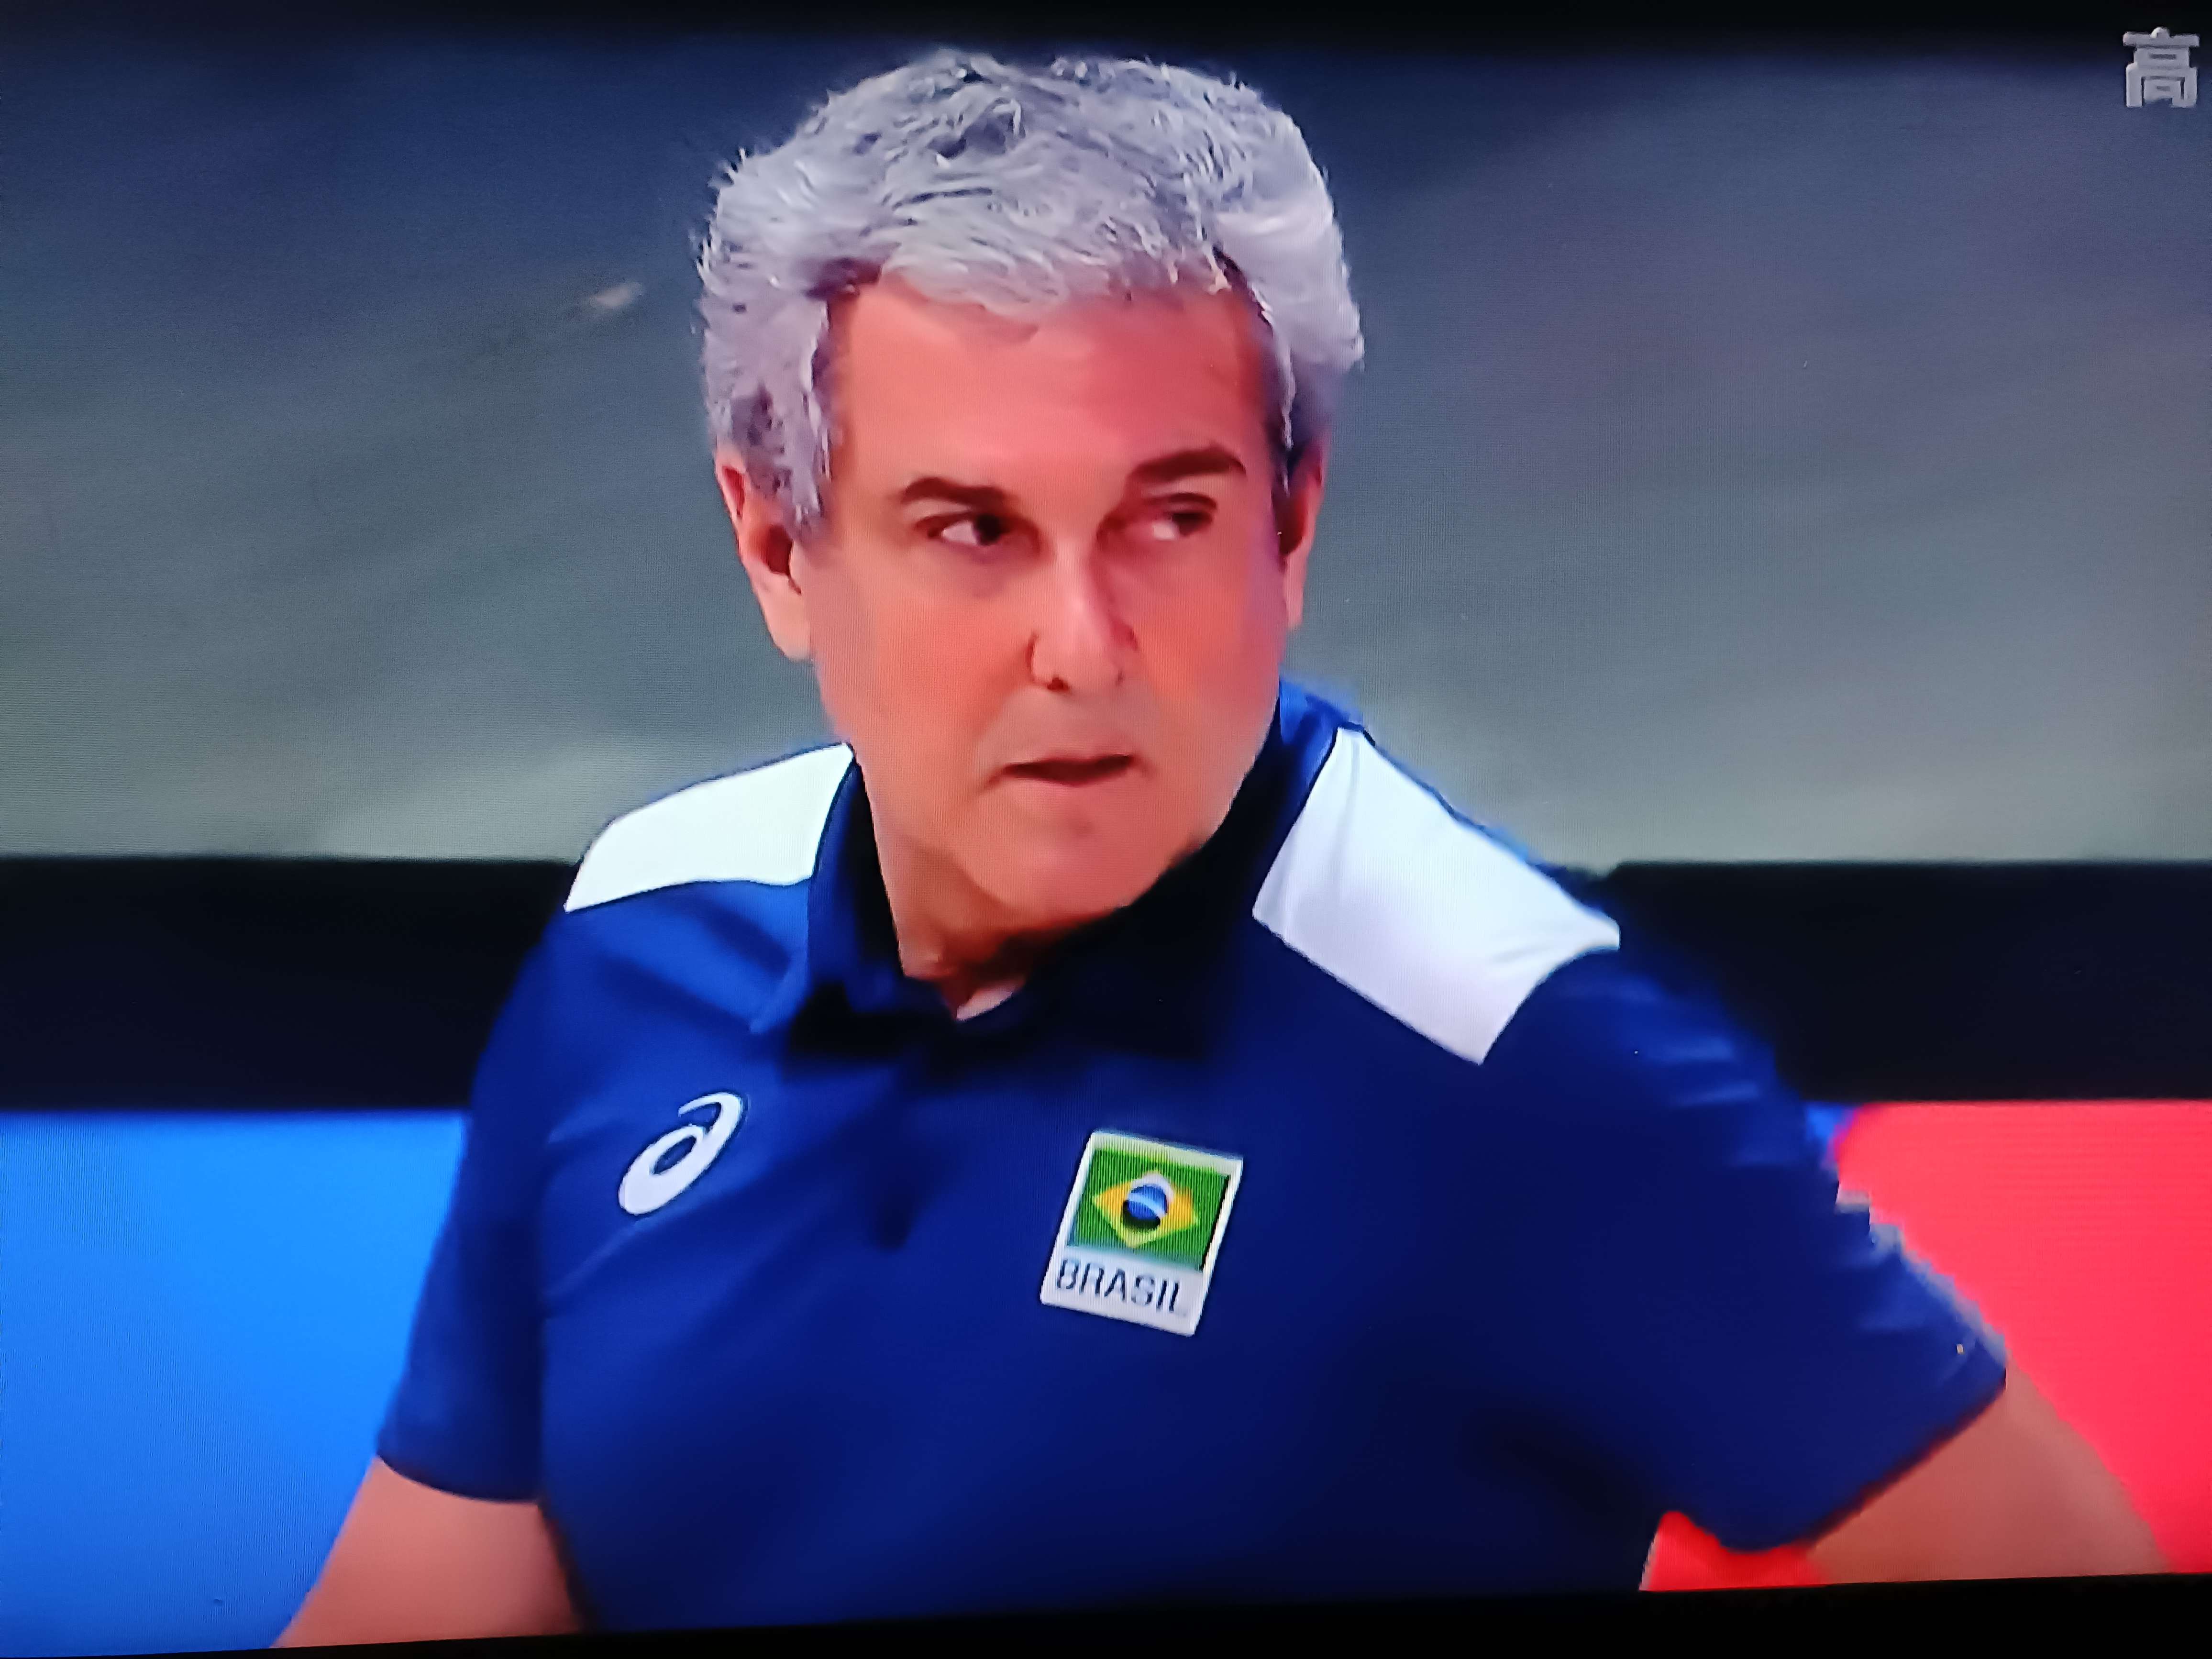 彩虹1009 的想法: 巴西女排的主教练吉马良斯的坚持有价值!… 